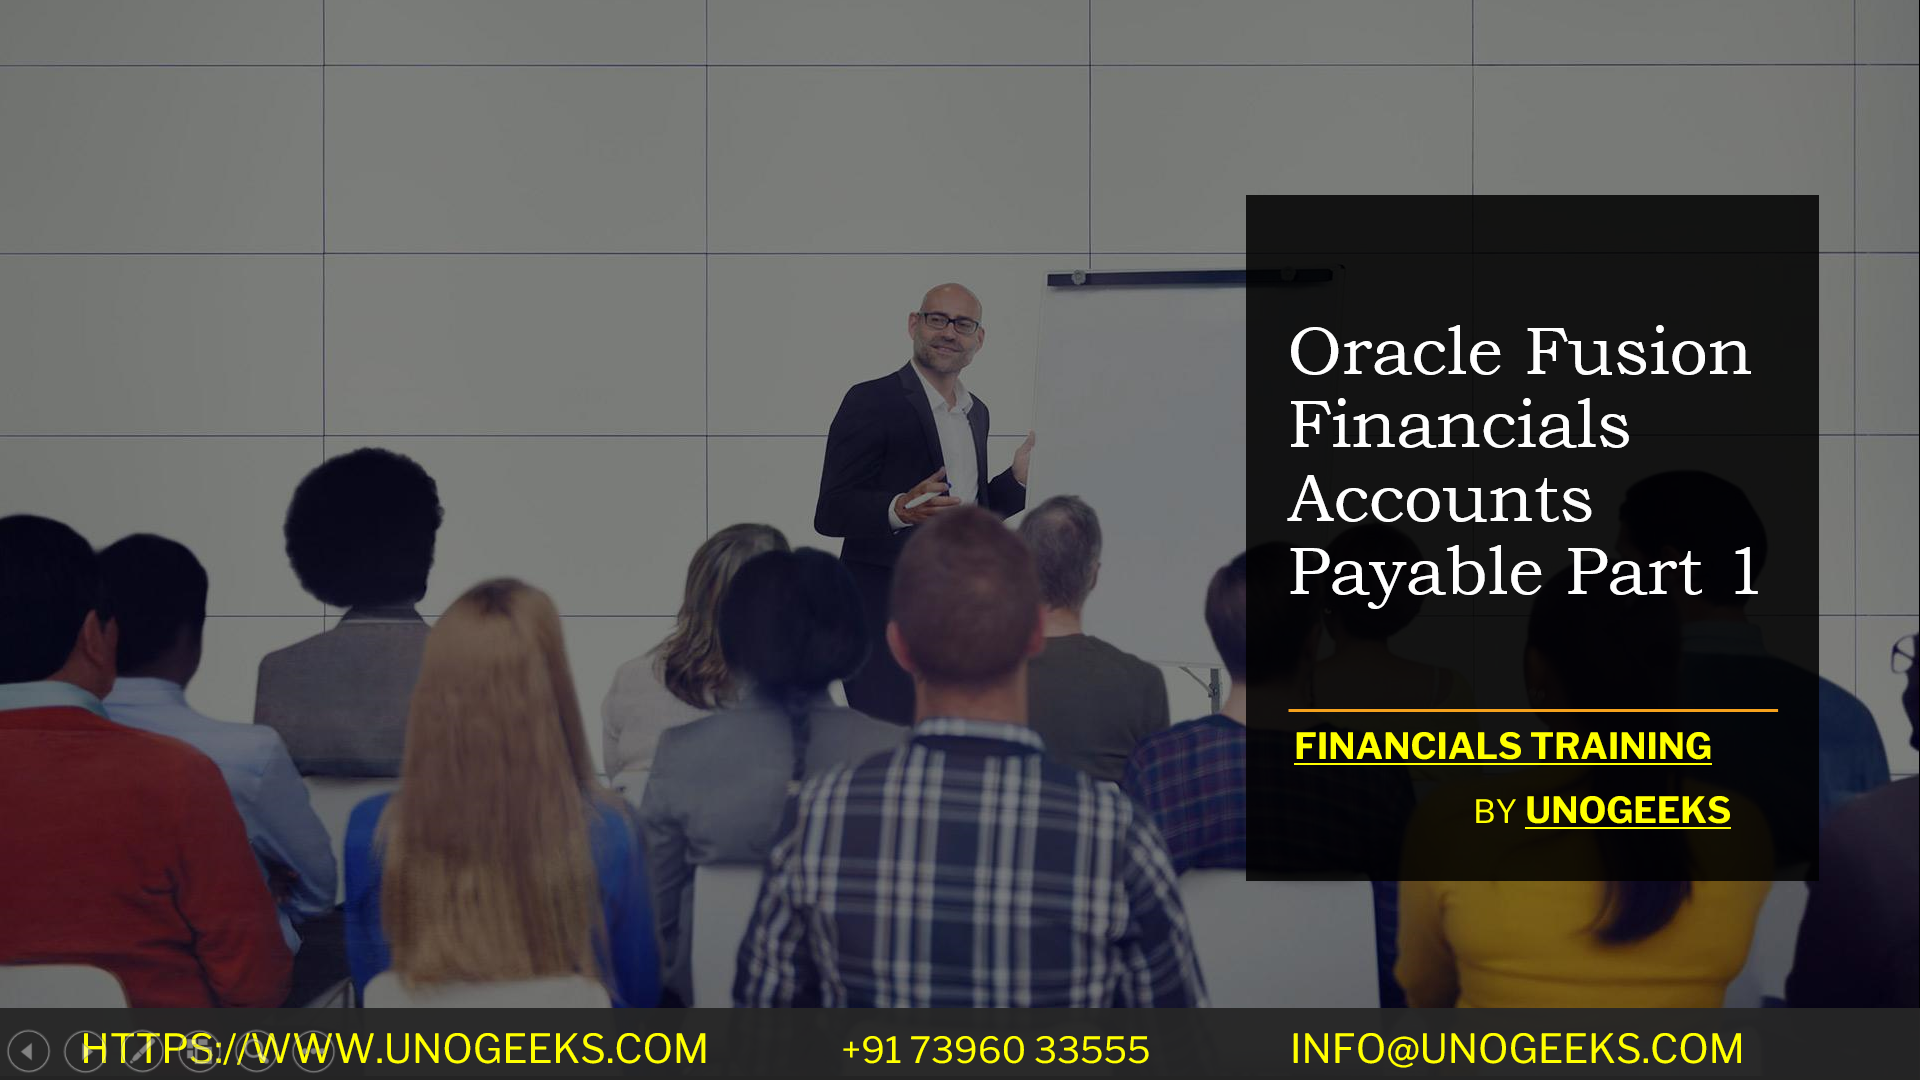 Oracle Fusion Financials Accounts Payable Part 1